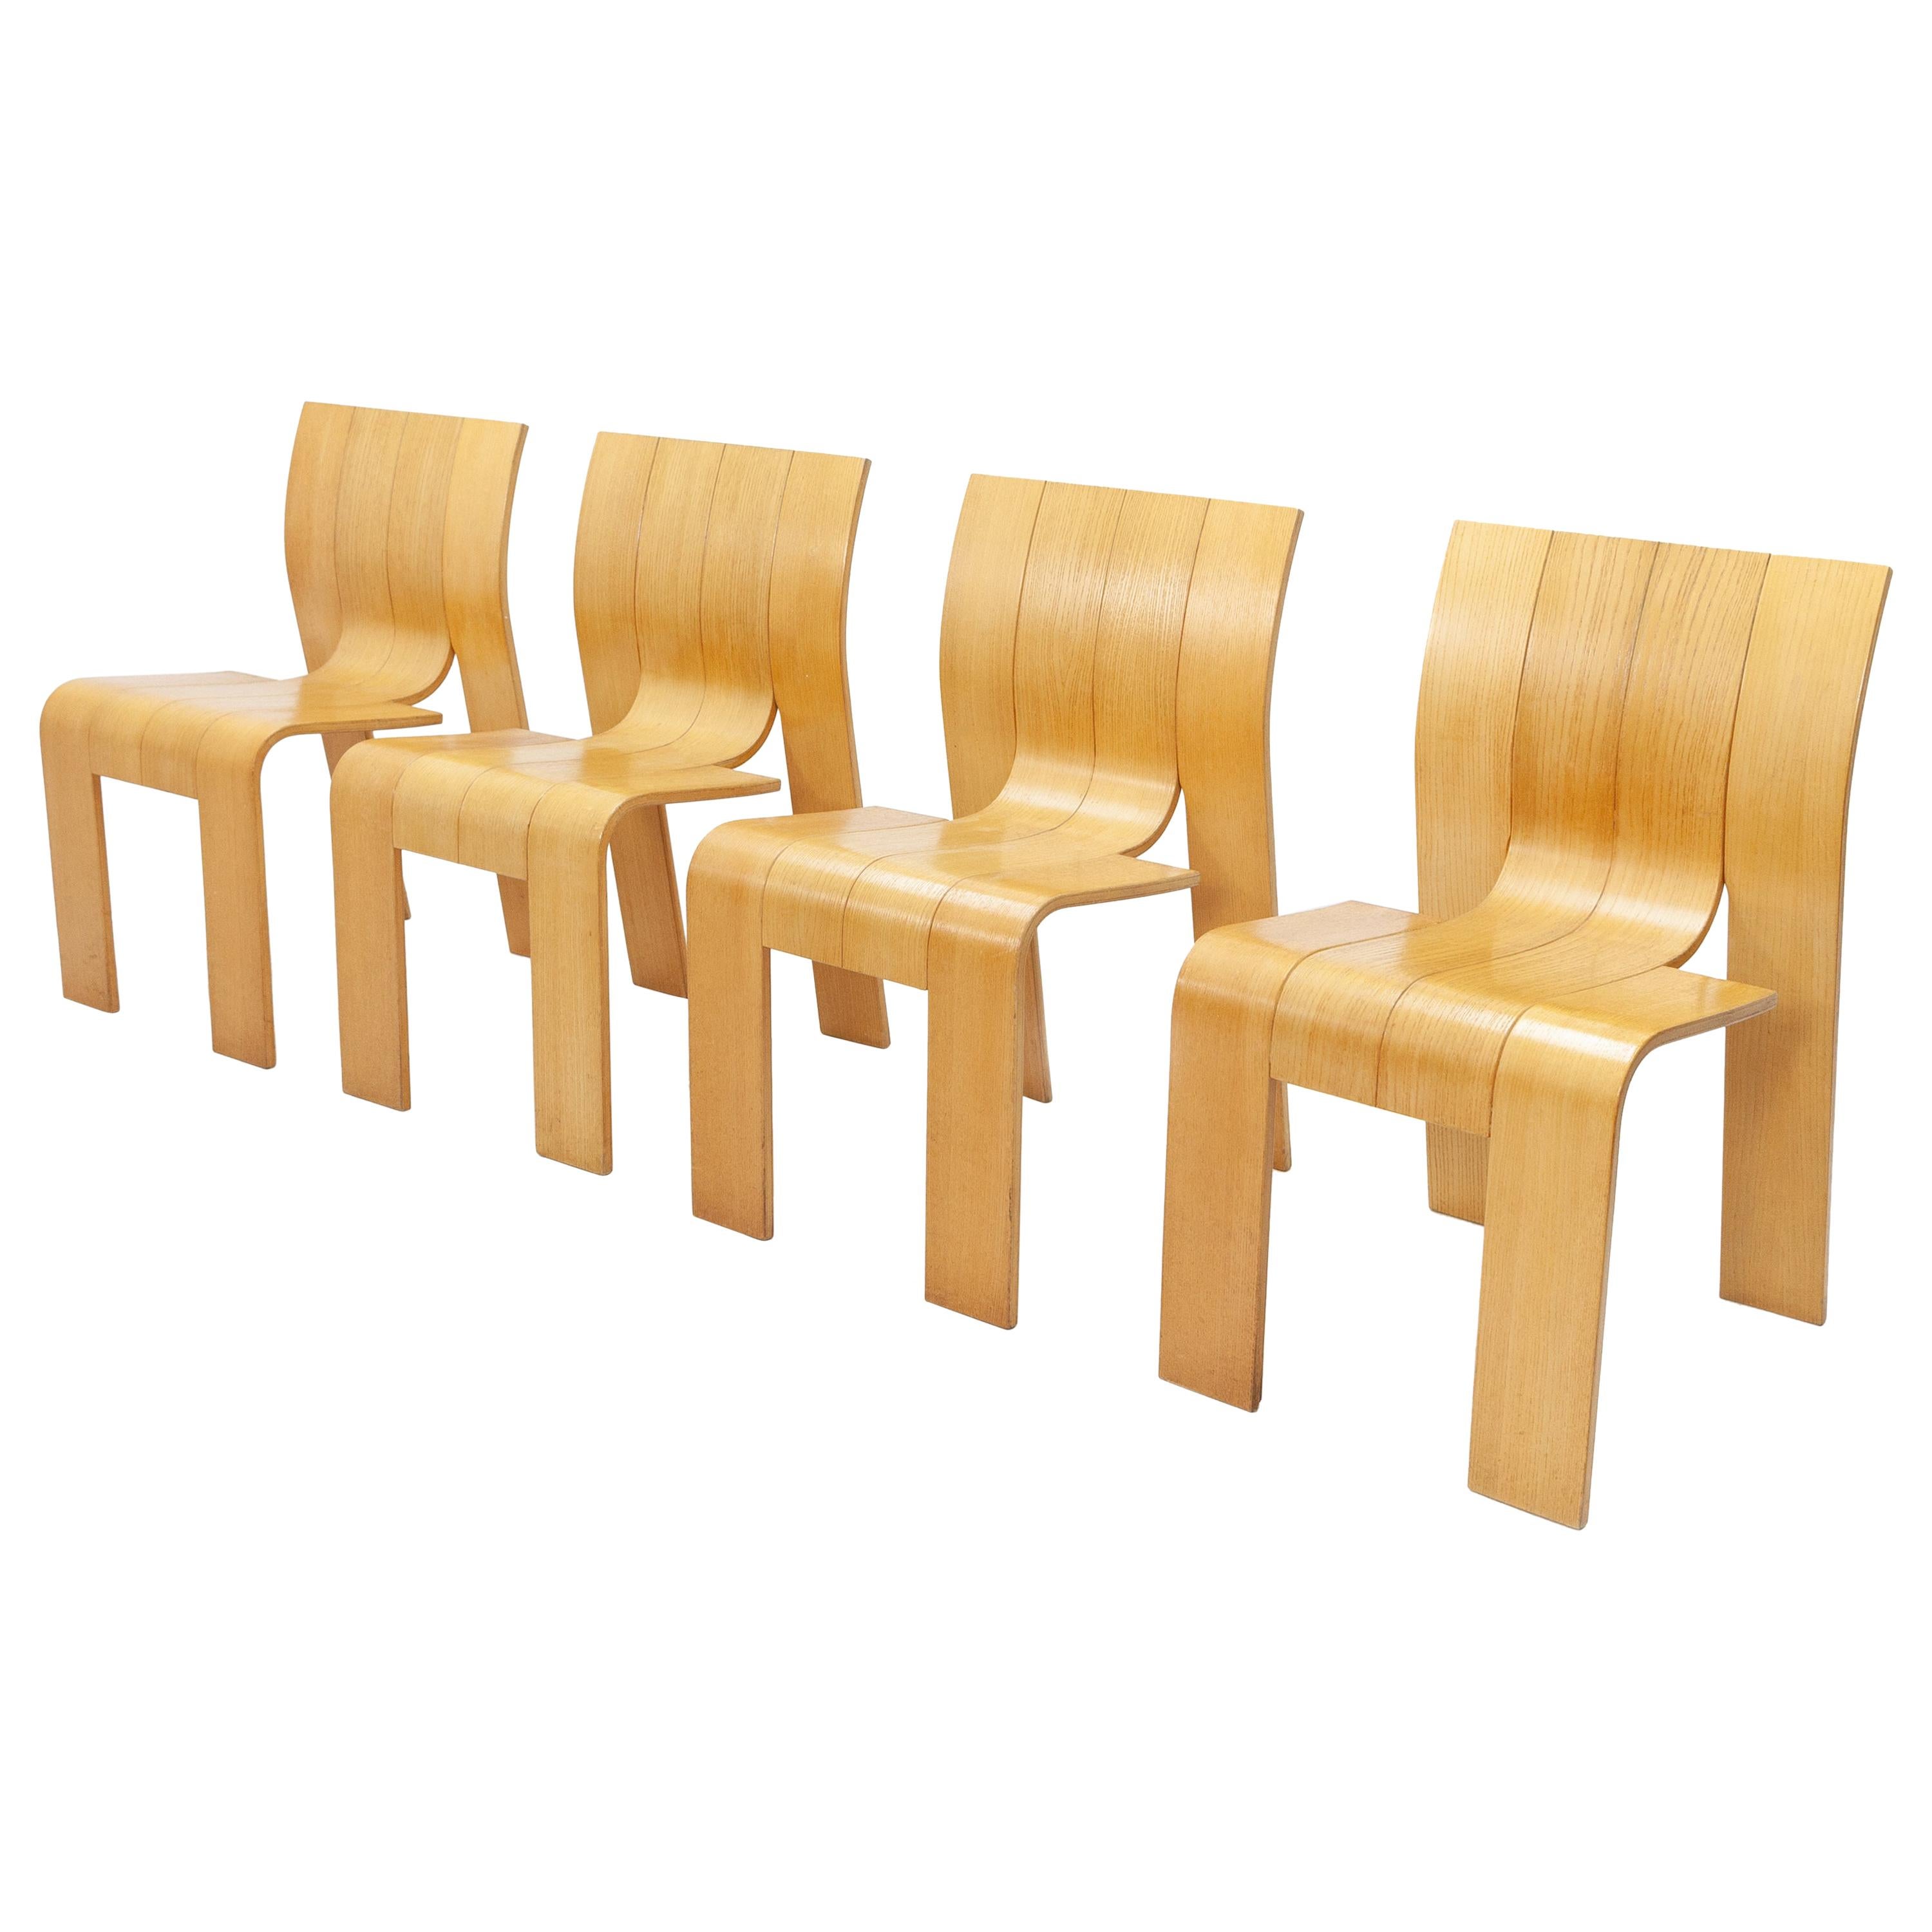 Strip Chairs, Design Gijs Bakker for Castelijn, 1970s 